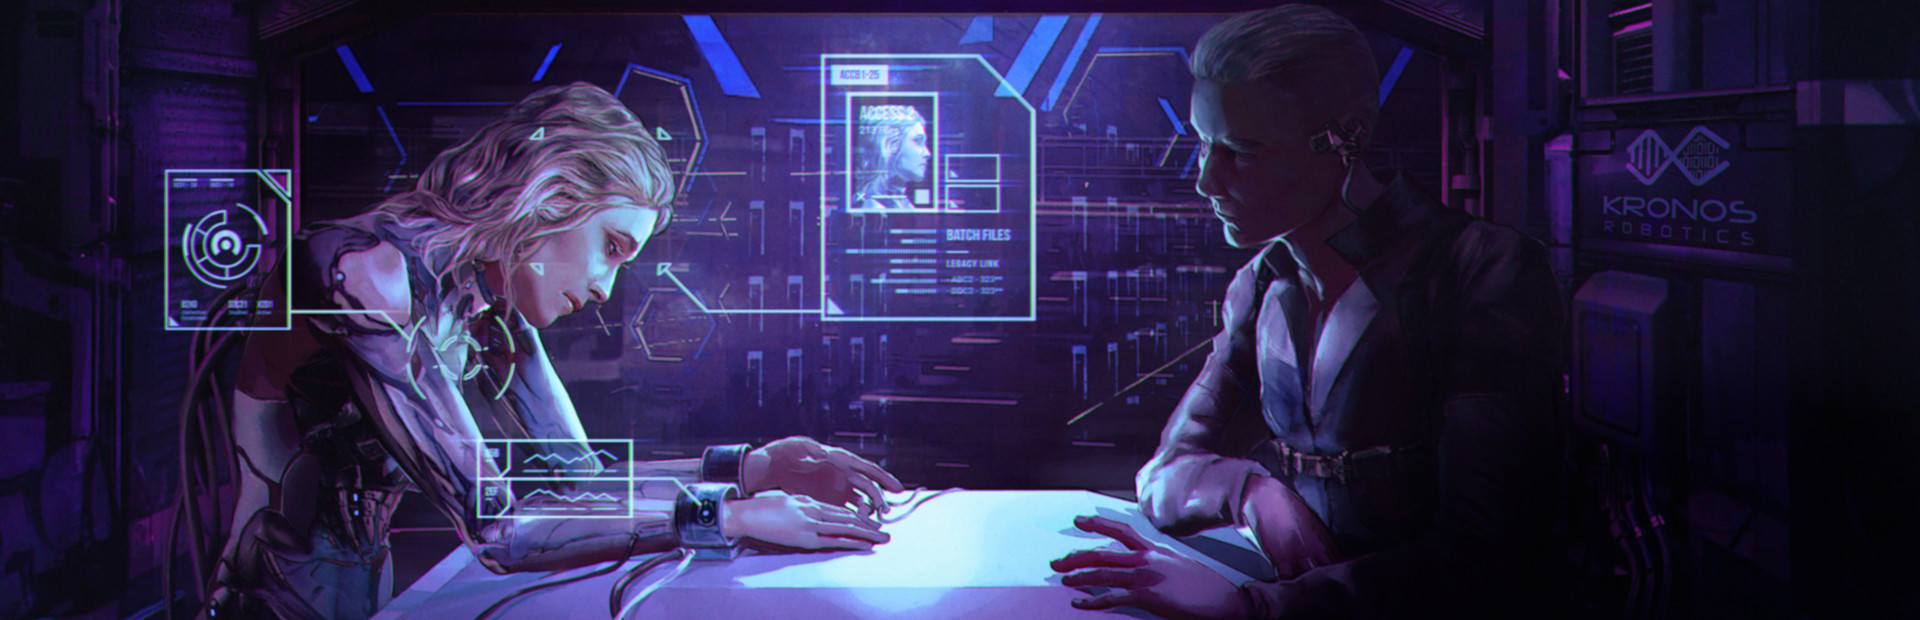 Silicon Dreams  |  cyberpunk interrogation cover image